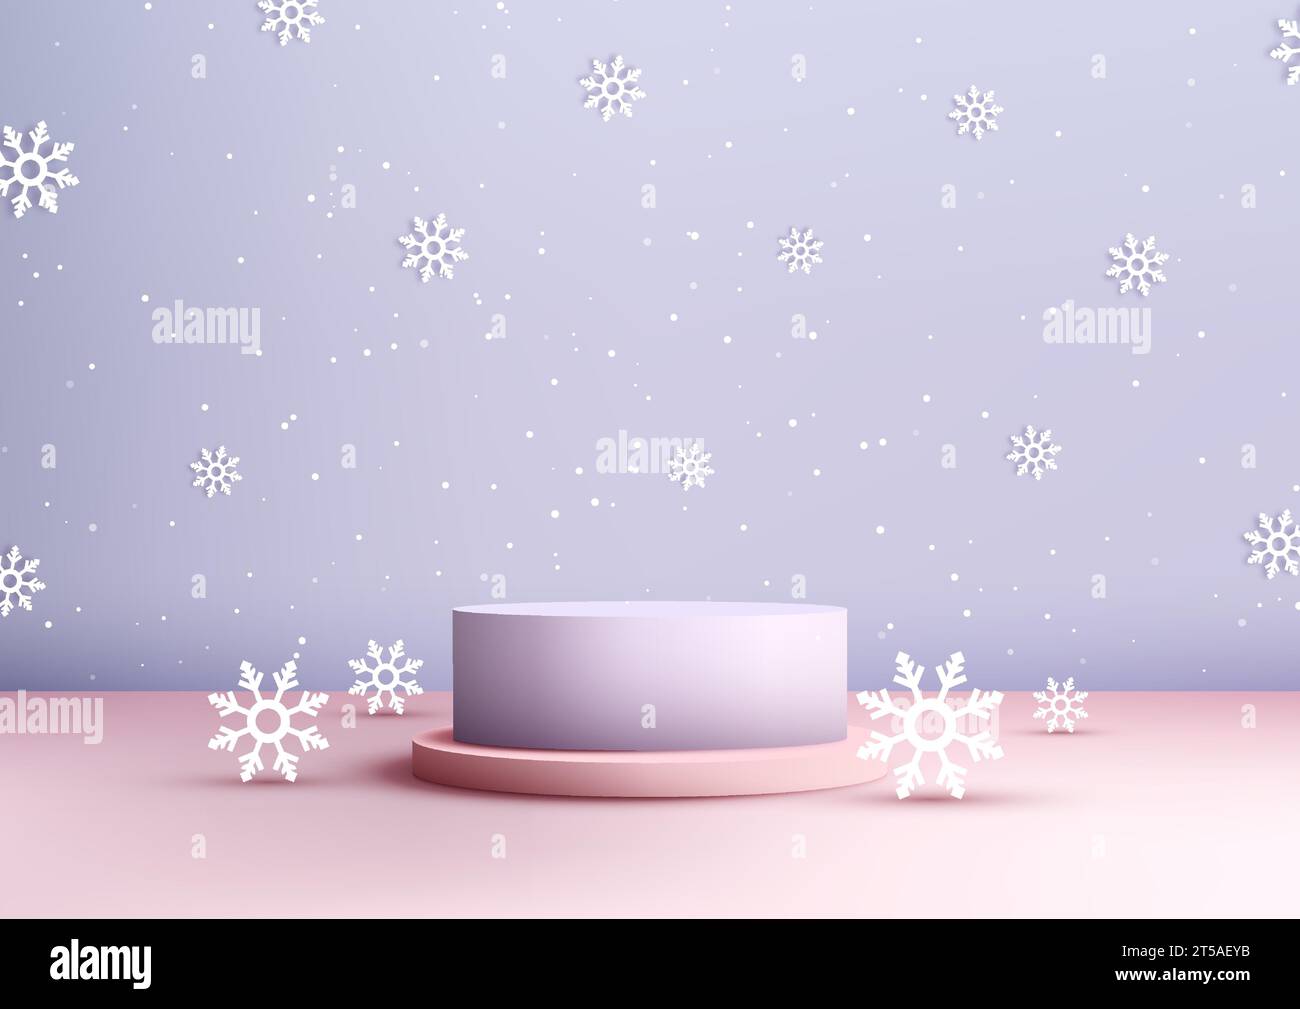 Weihnachtliches, festliches 3D-Podium in Lila und Pink mit Schneeflocke und Schnee auf lila Hintergrund, perfekt für die Präsentation von Produkten und für ein Mock Stock Vektor